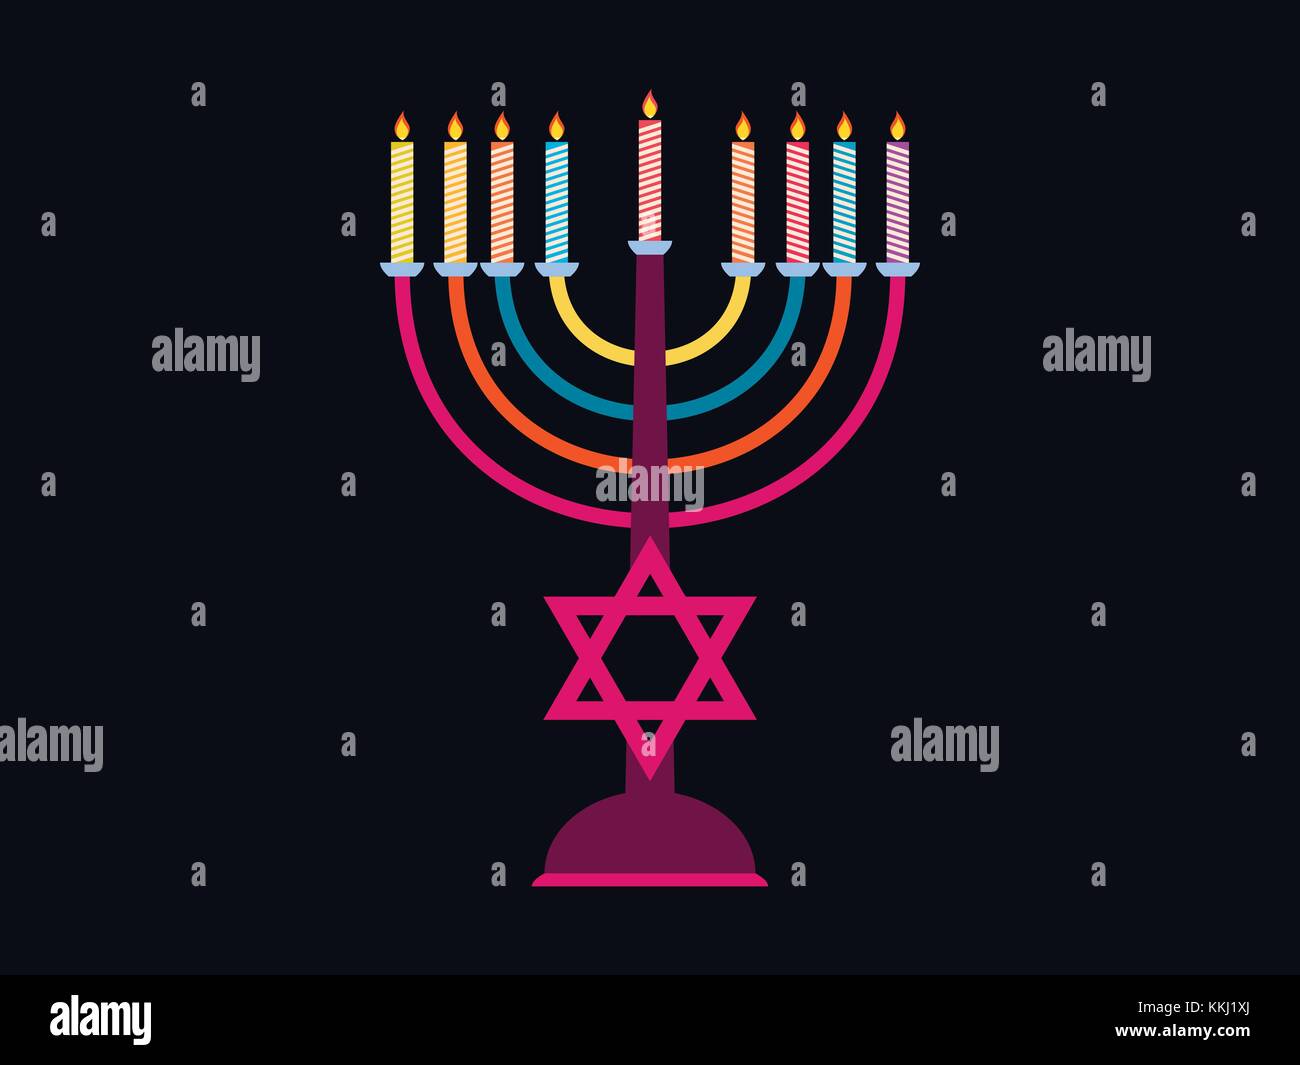 Happy Chanukah. Leuchter mit 9 Kerzen in verschiedenen Farben.  Sechszackigen Stern. Vector Illustration Stock-Vektorgrafik - Alamy